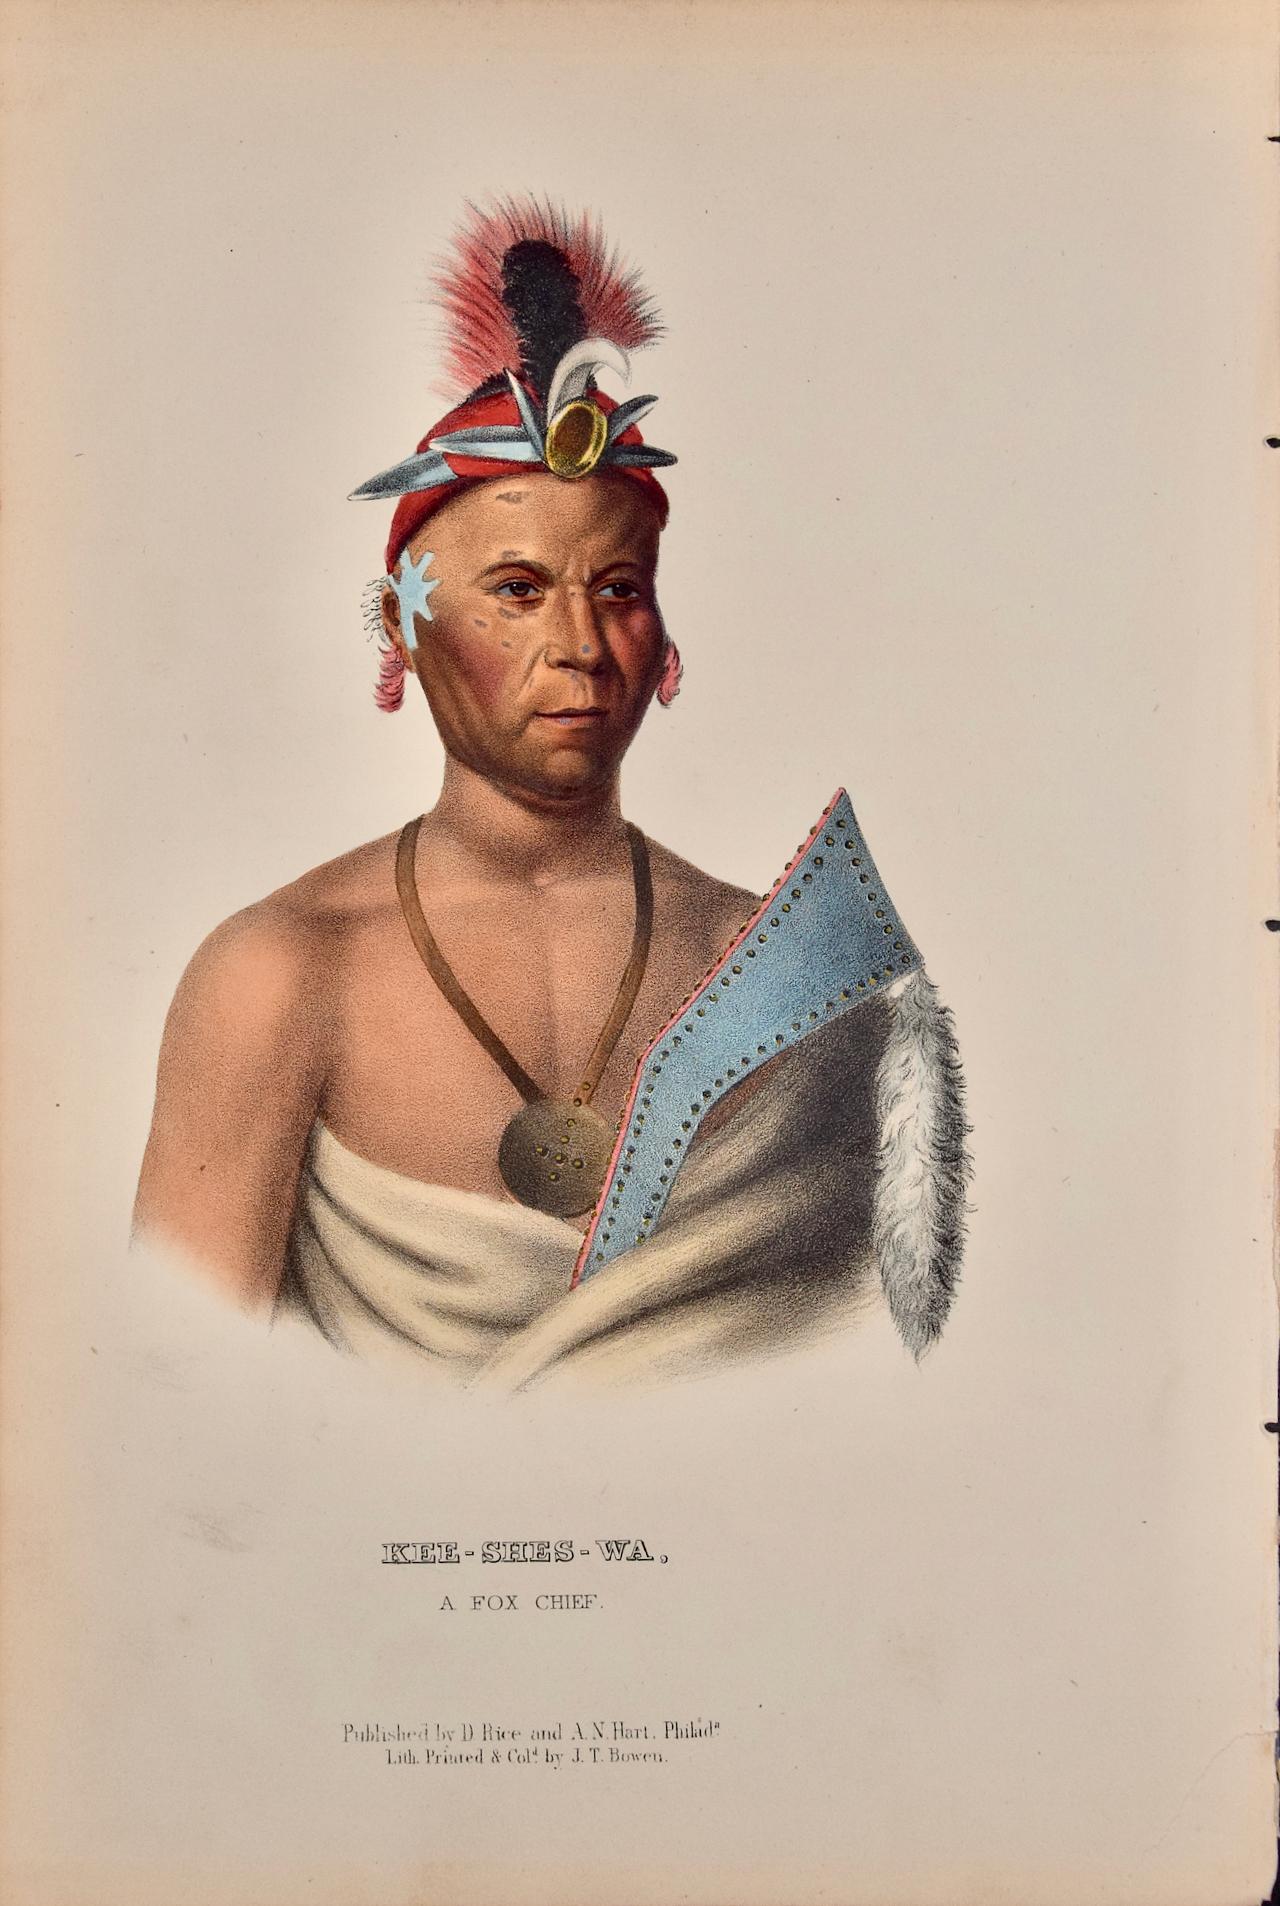 Kee-Shes-Wa, A Fox Chief: Eine handkolorierte Original-Lithographie von McKenney & Hall